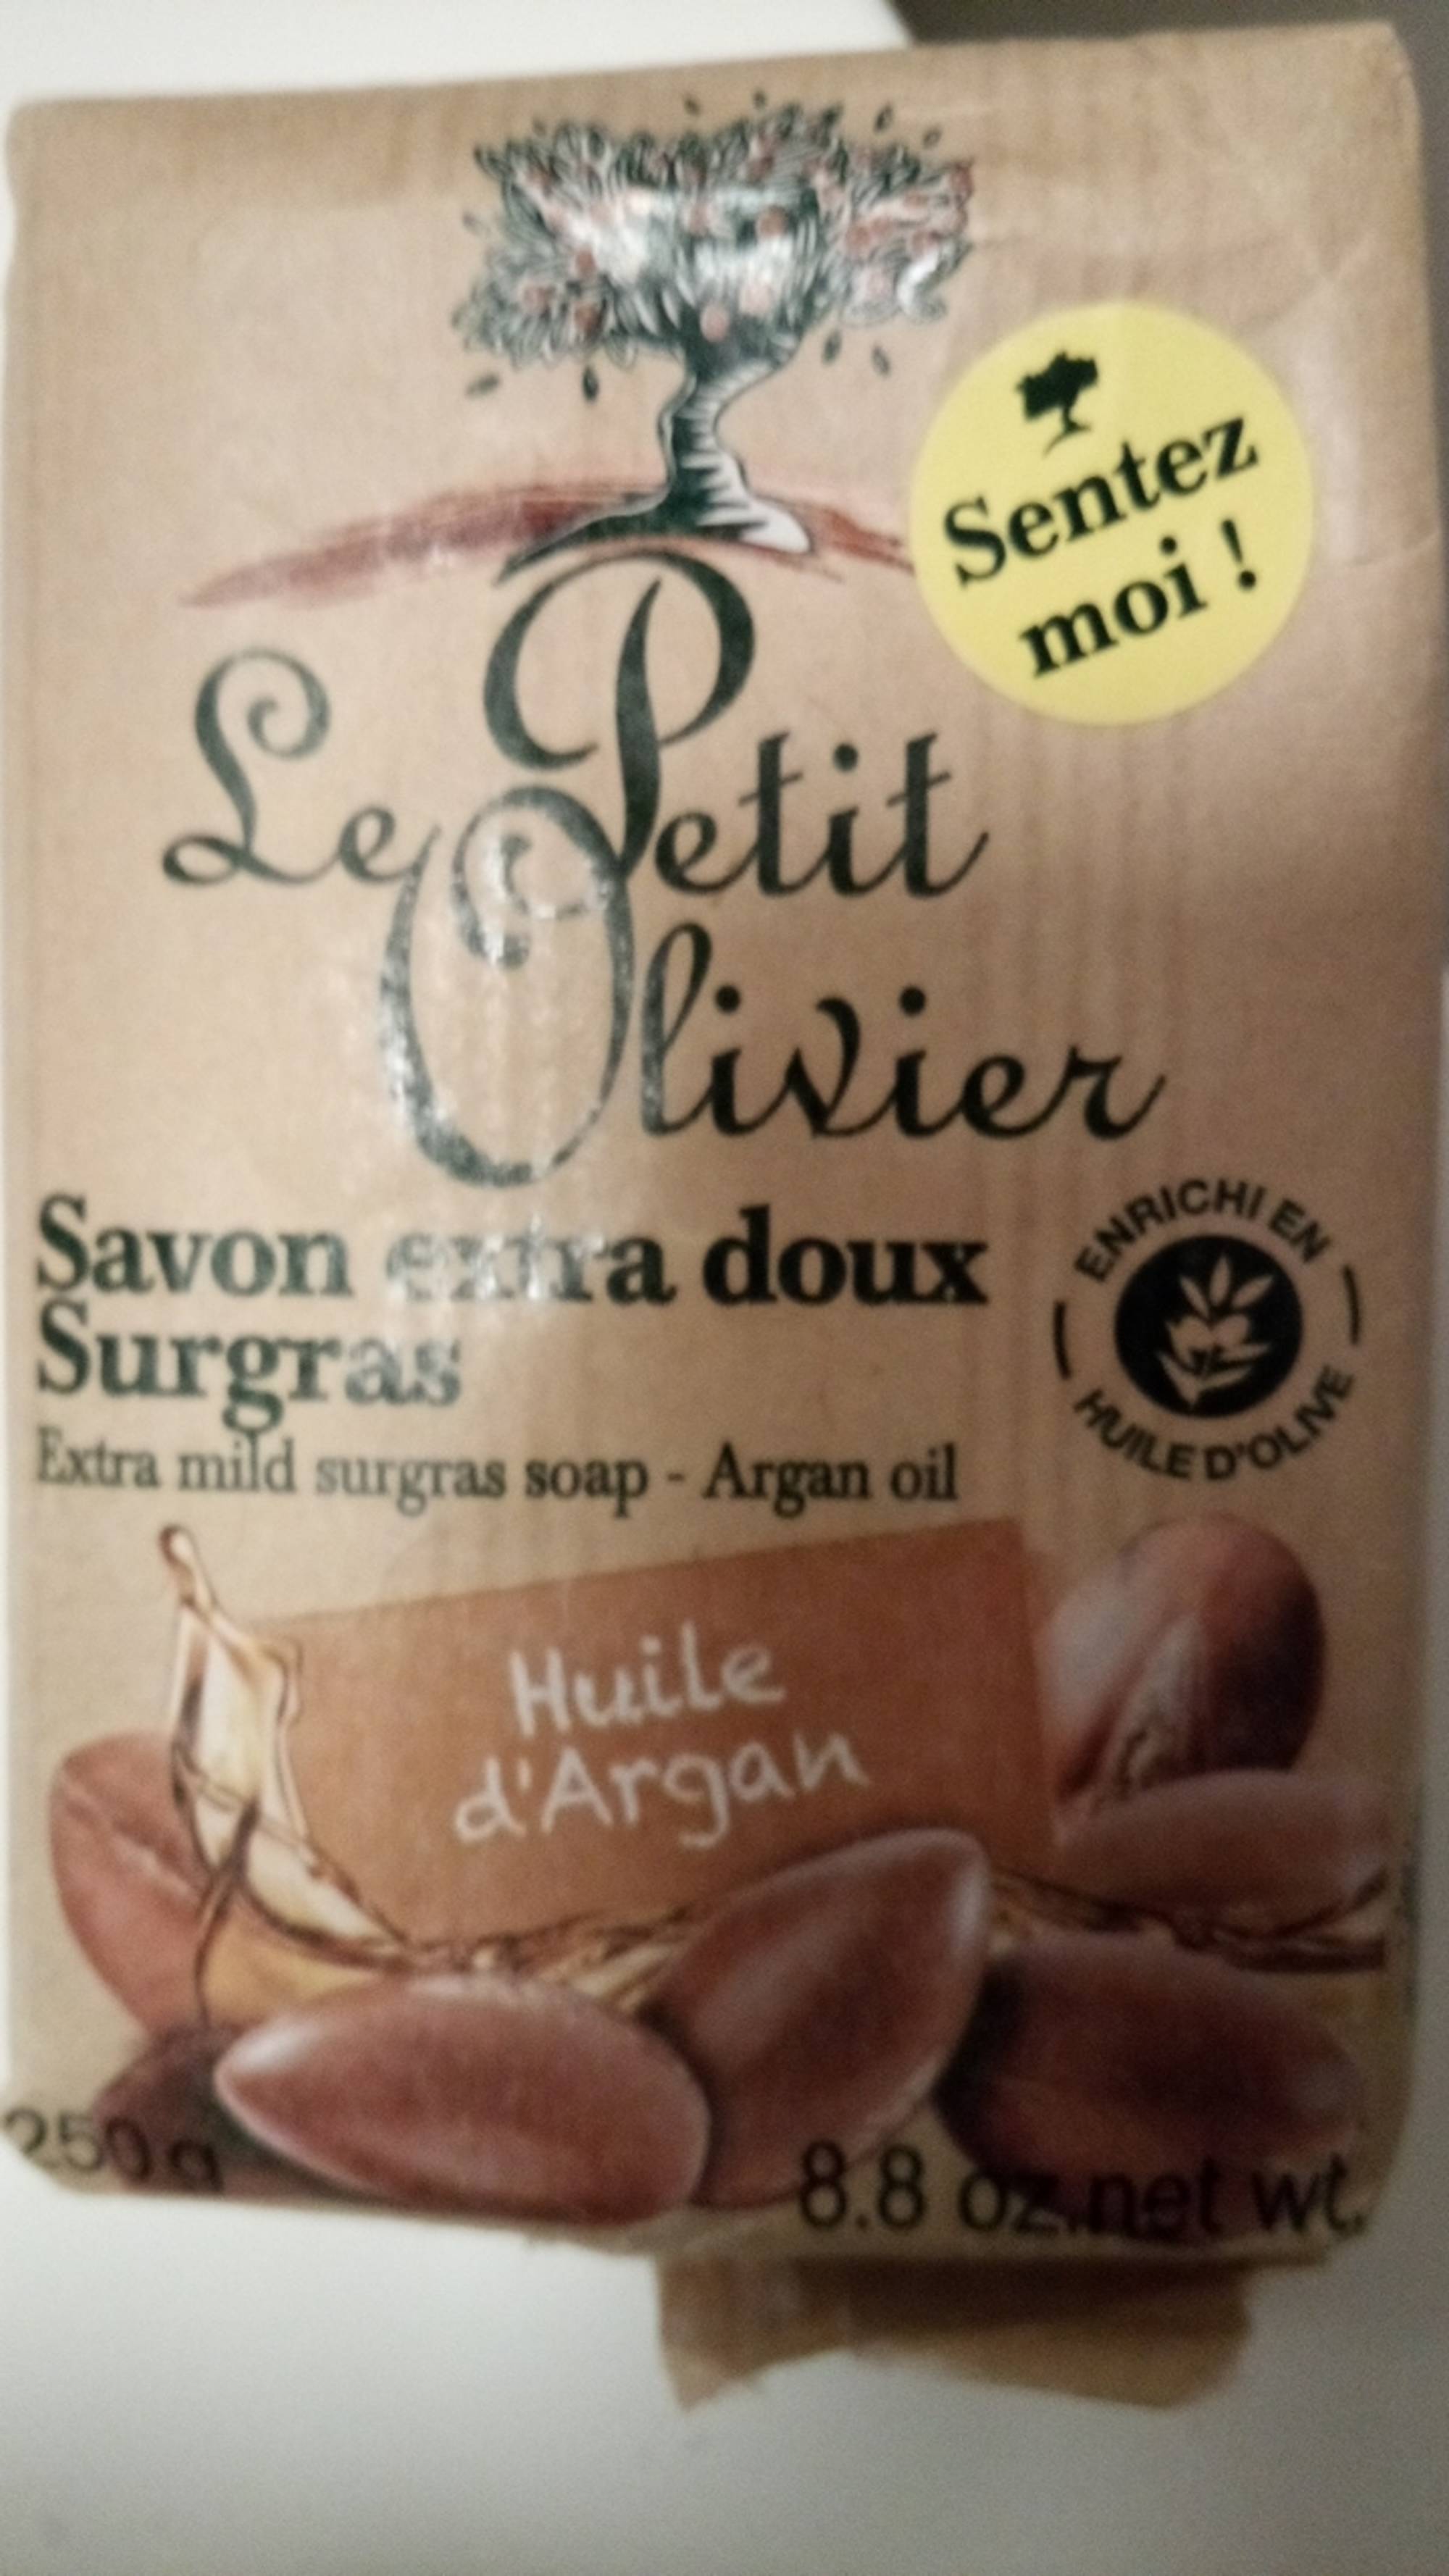 LE PETIT OLIVIER - Savon extra doux surgras - Huile d'Argan